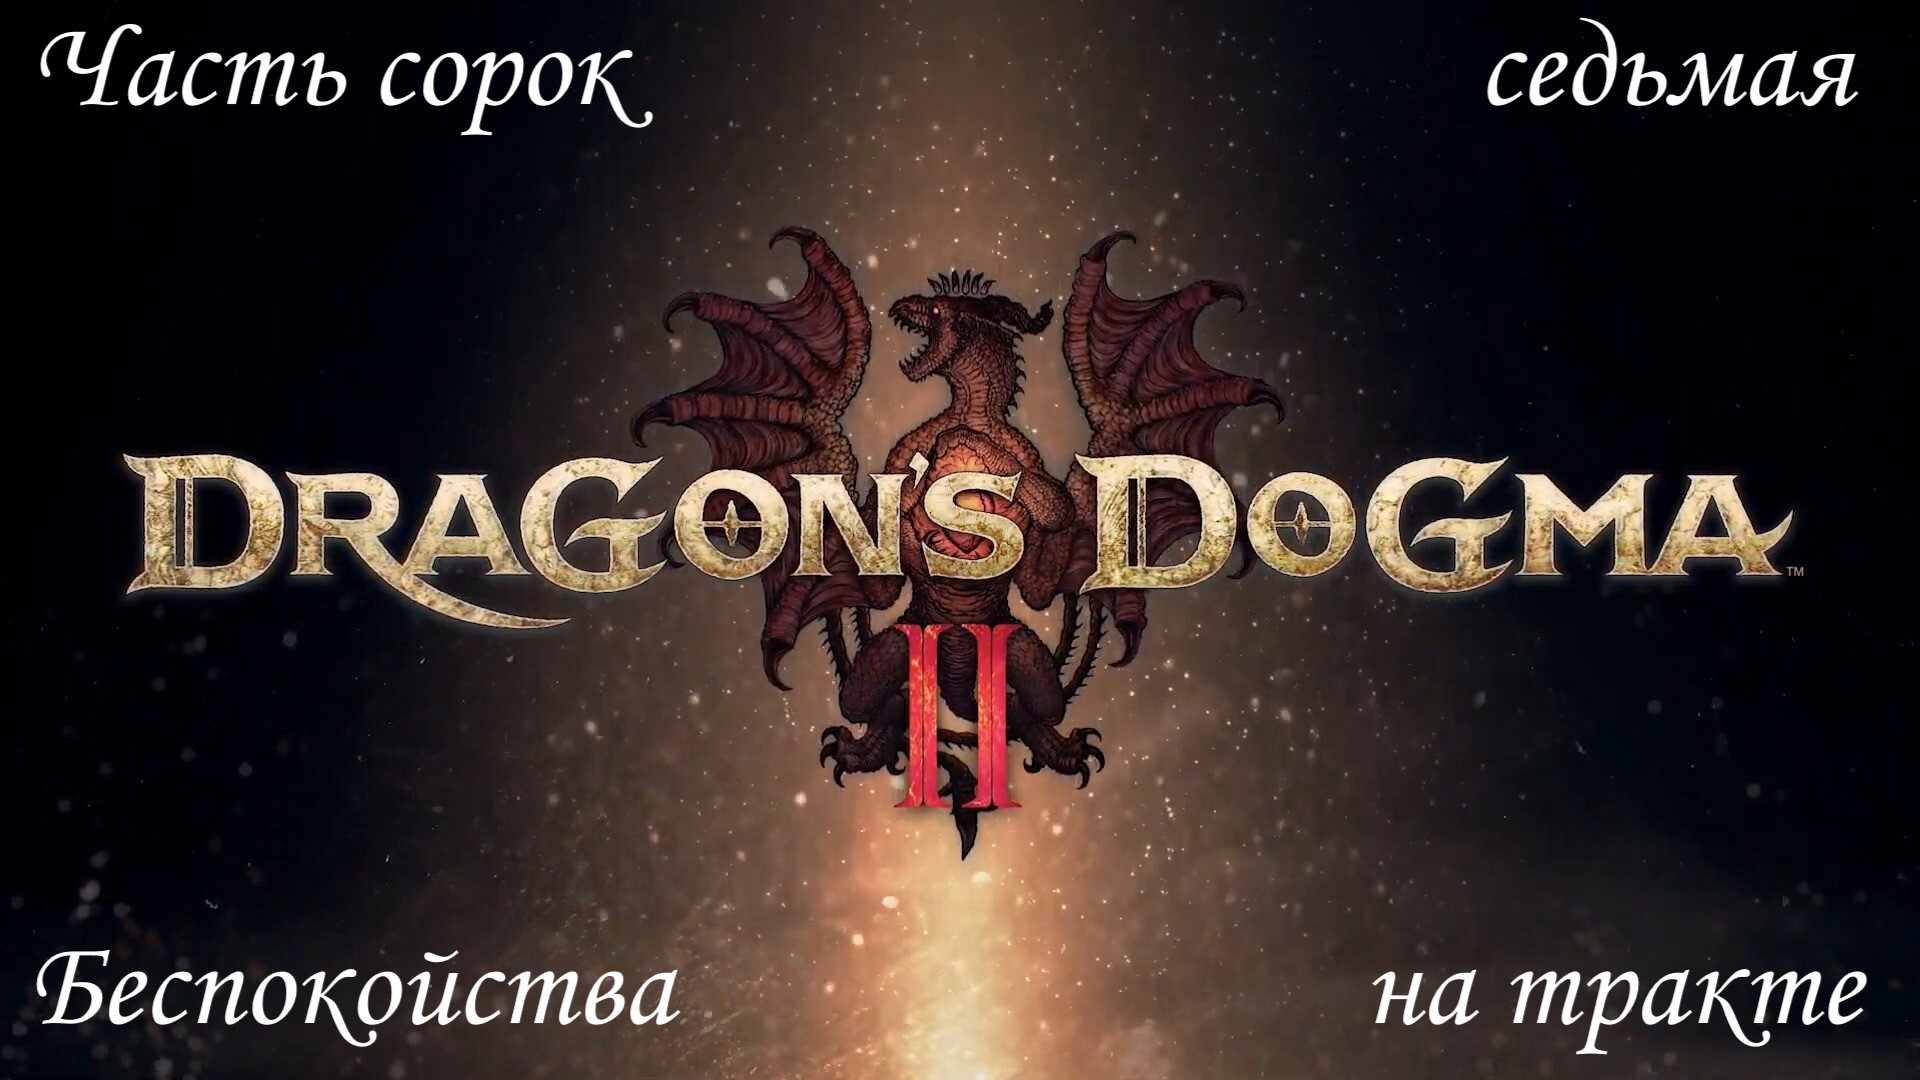 Прохождение Dragons Dogma 2 на русском - Часть сорок седьмая. Беспокойства на тракте